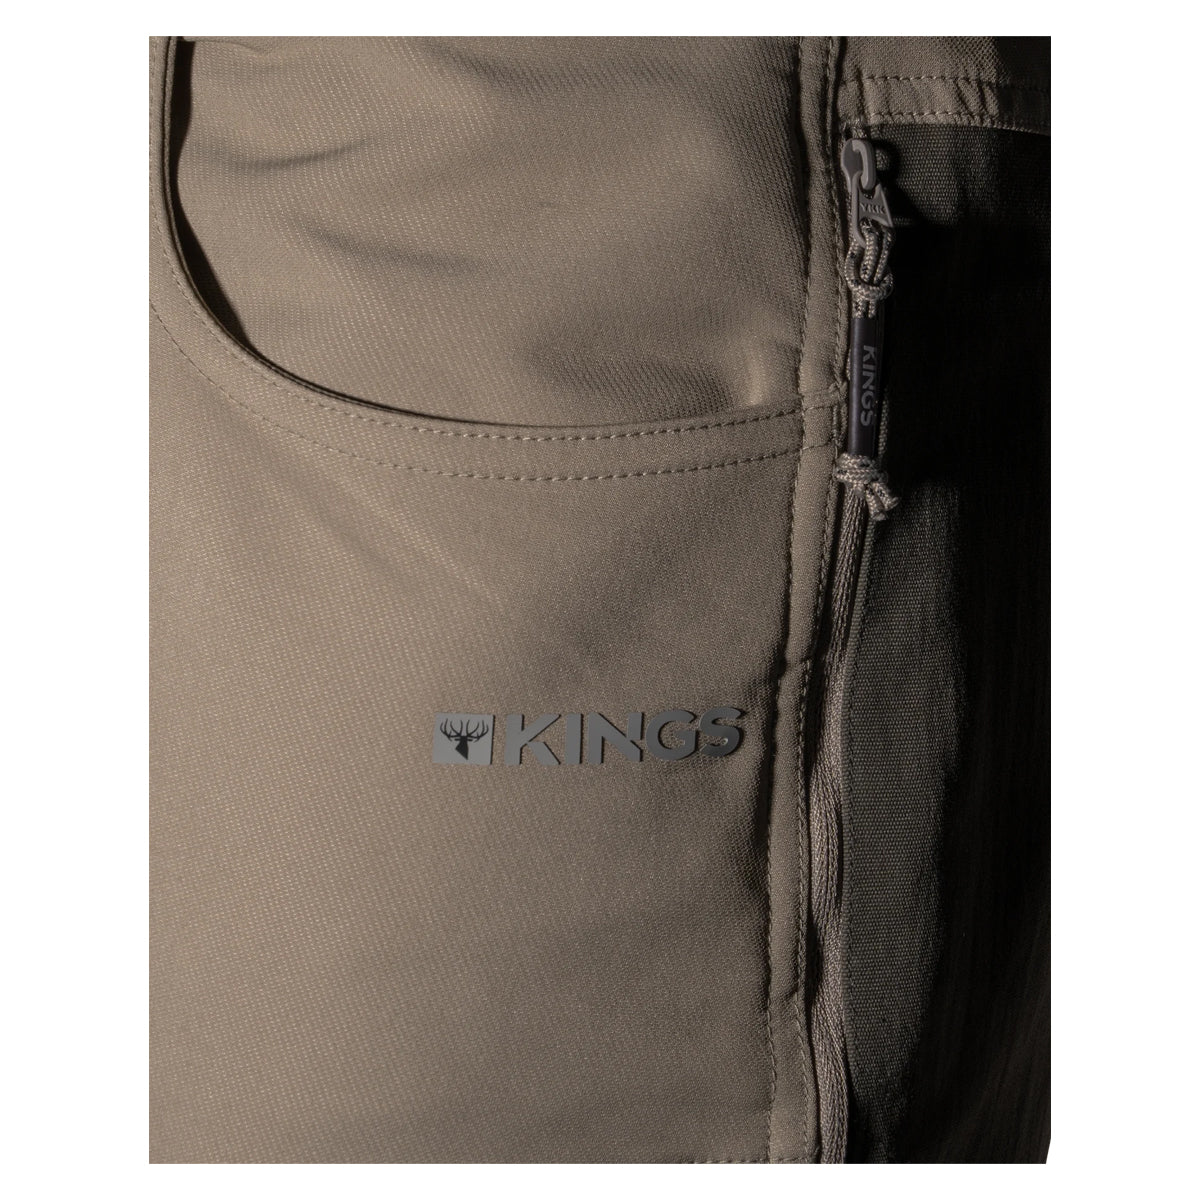 King's XKG Field Pant